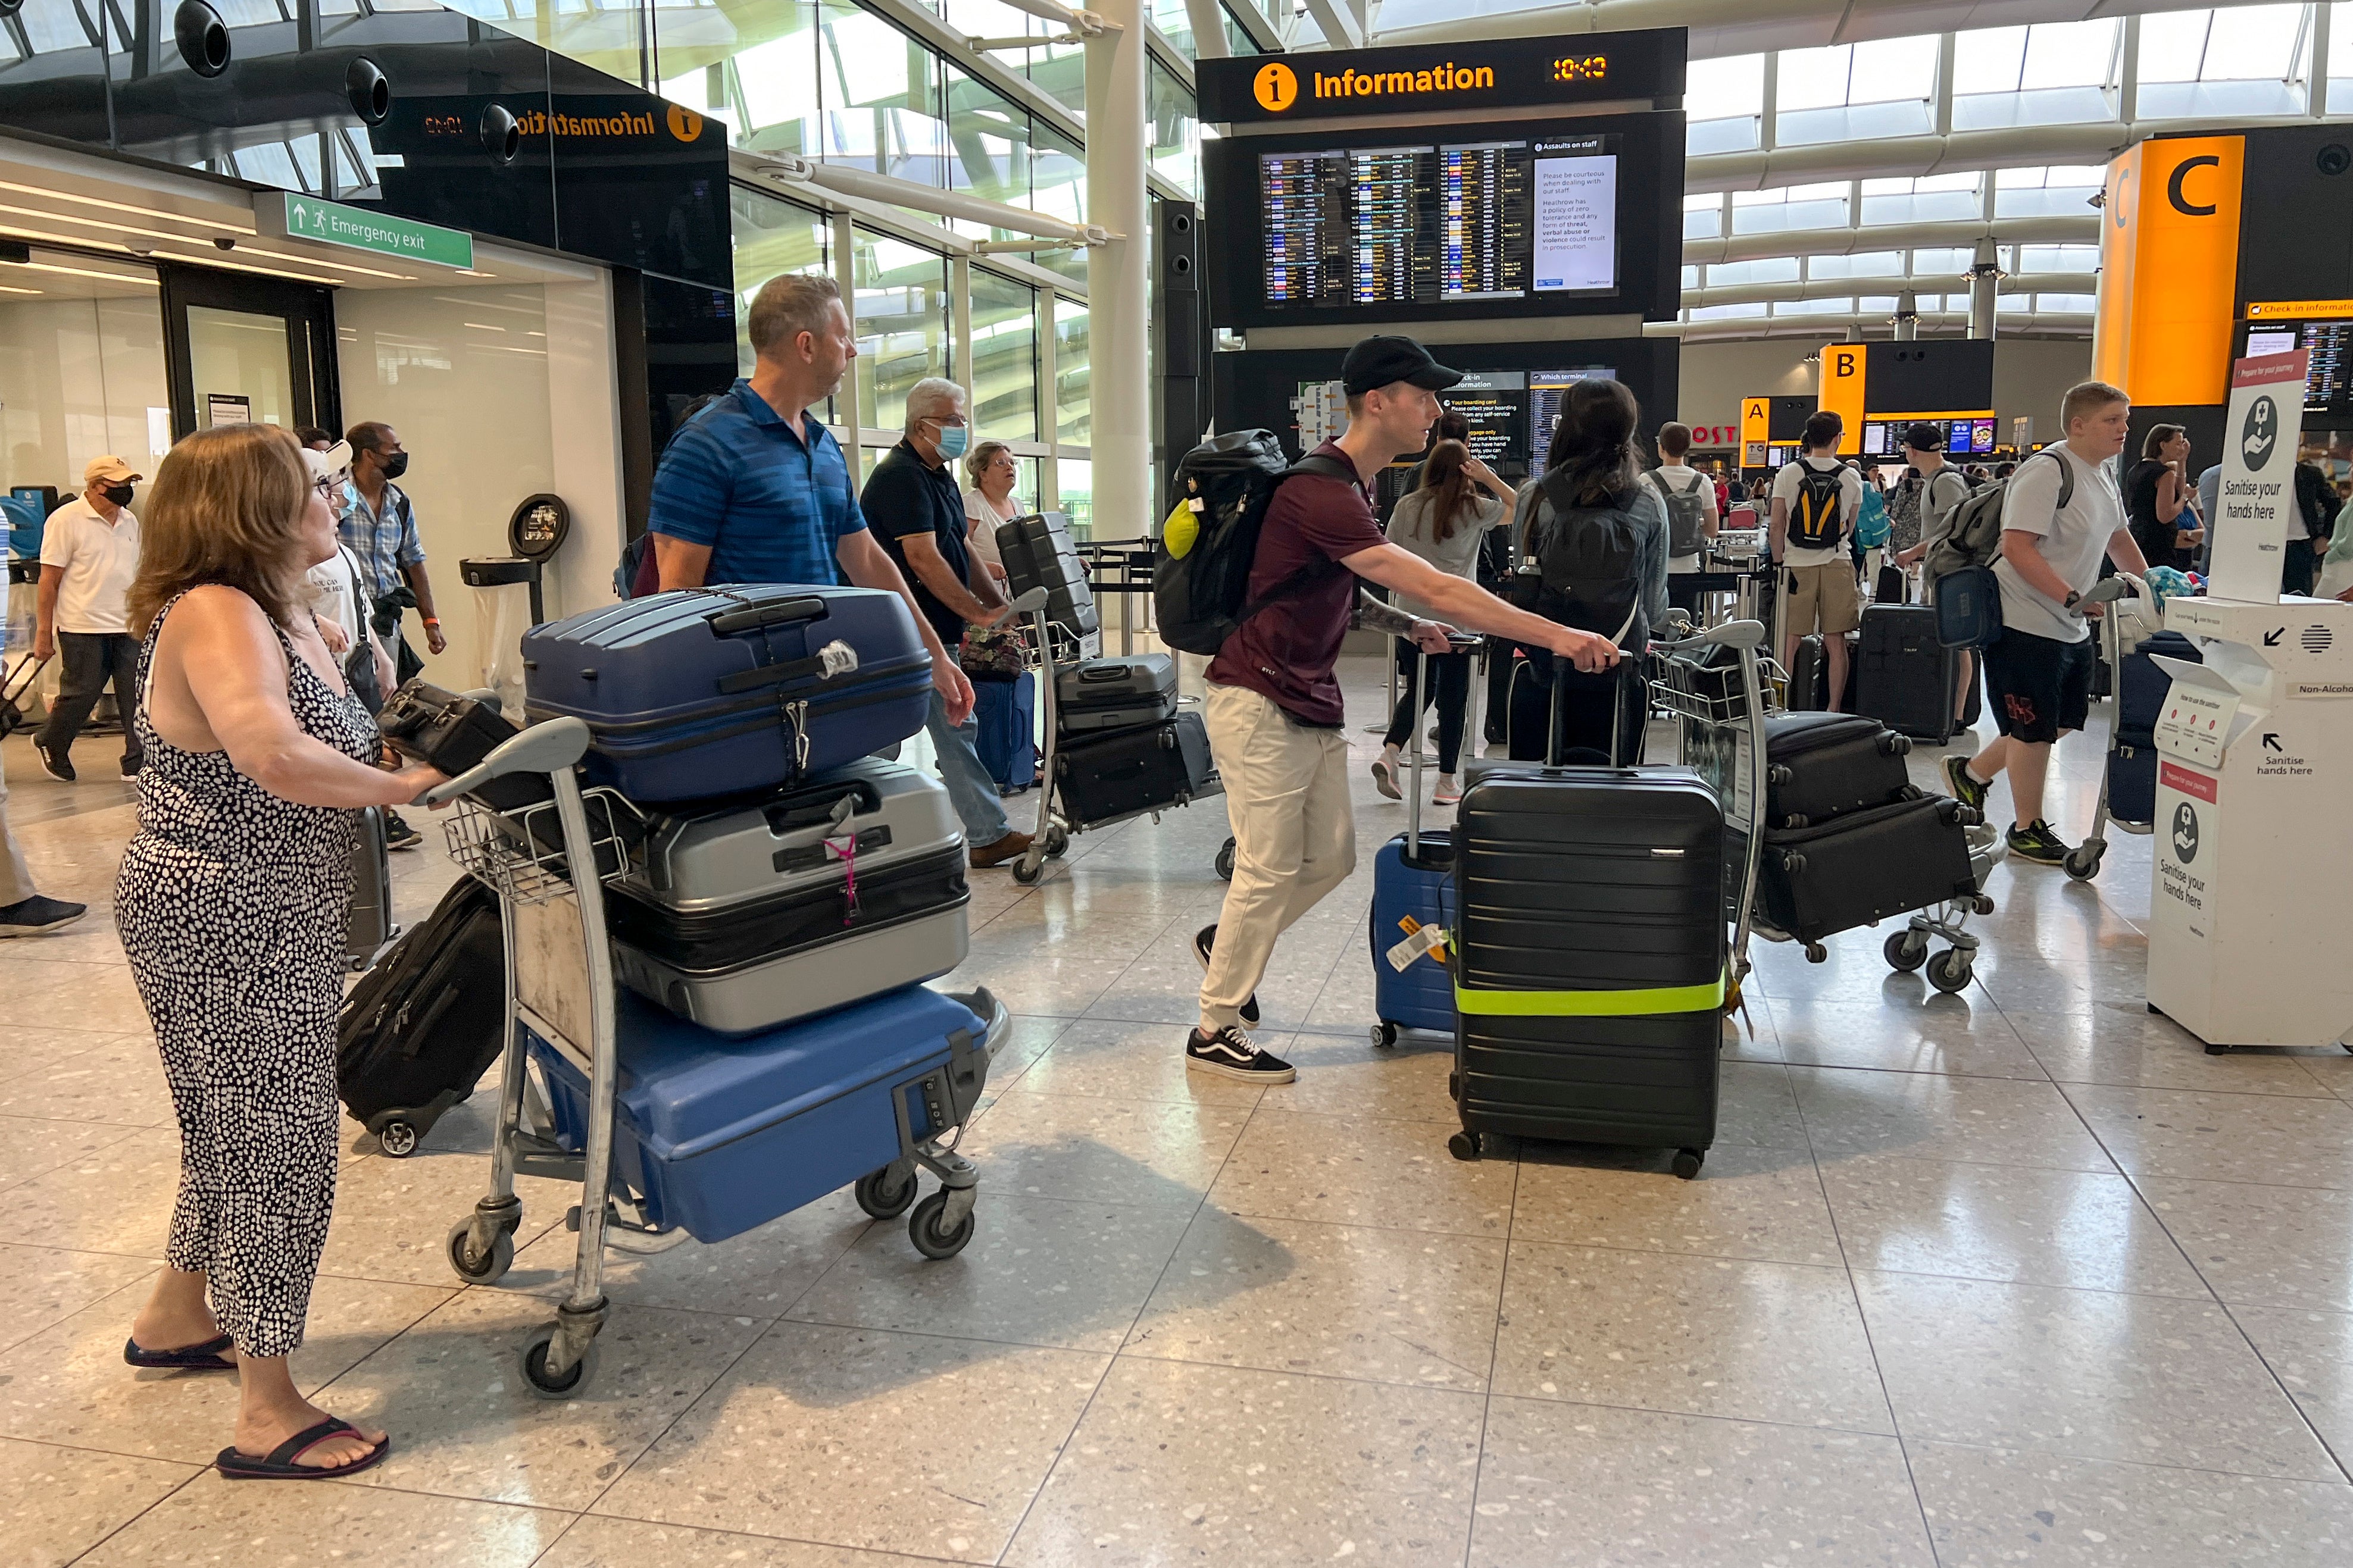 MAE: Atenţionare de călătorie în Marea Britanie! Sunt anunțate perturbări ale activităţii poliţiei de frontieră din aeroportul Heathrow/Londra